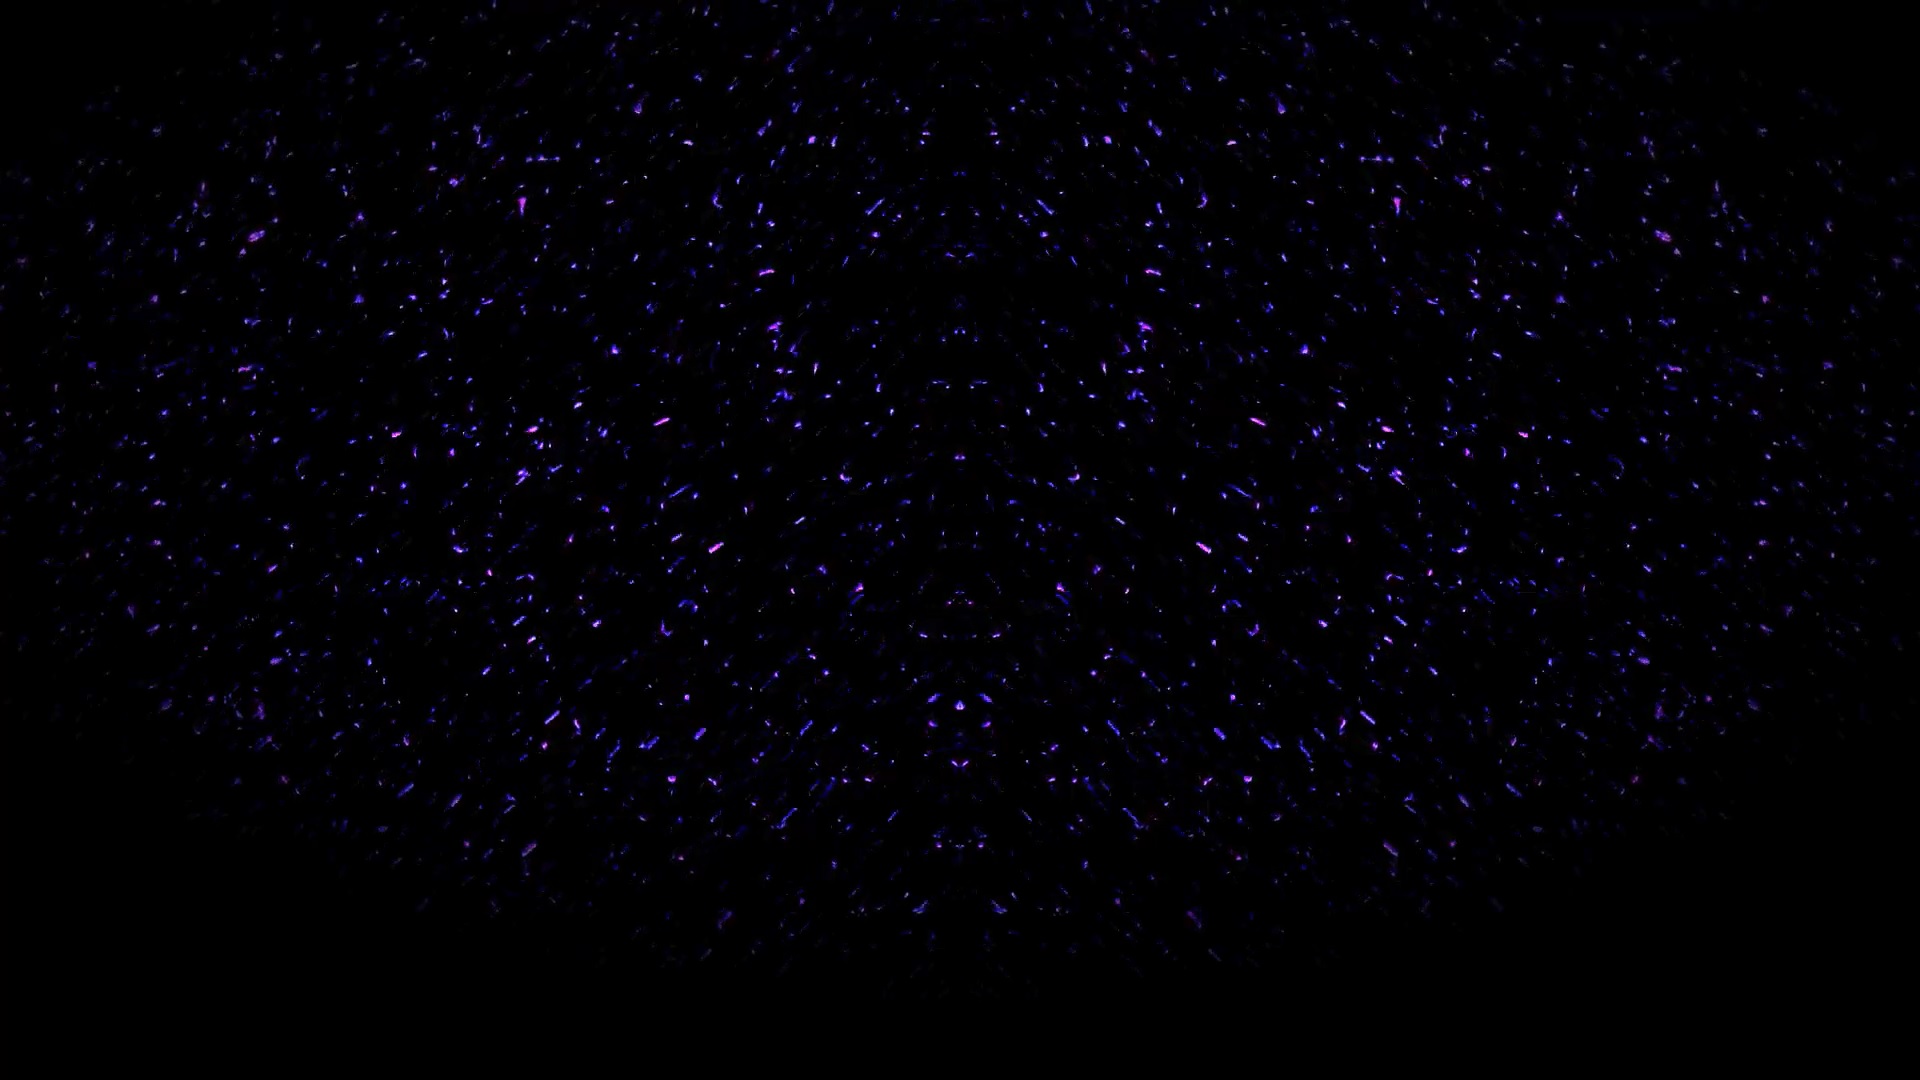 Background - aMAZE 2 - Purple Rays